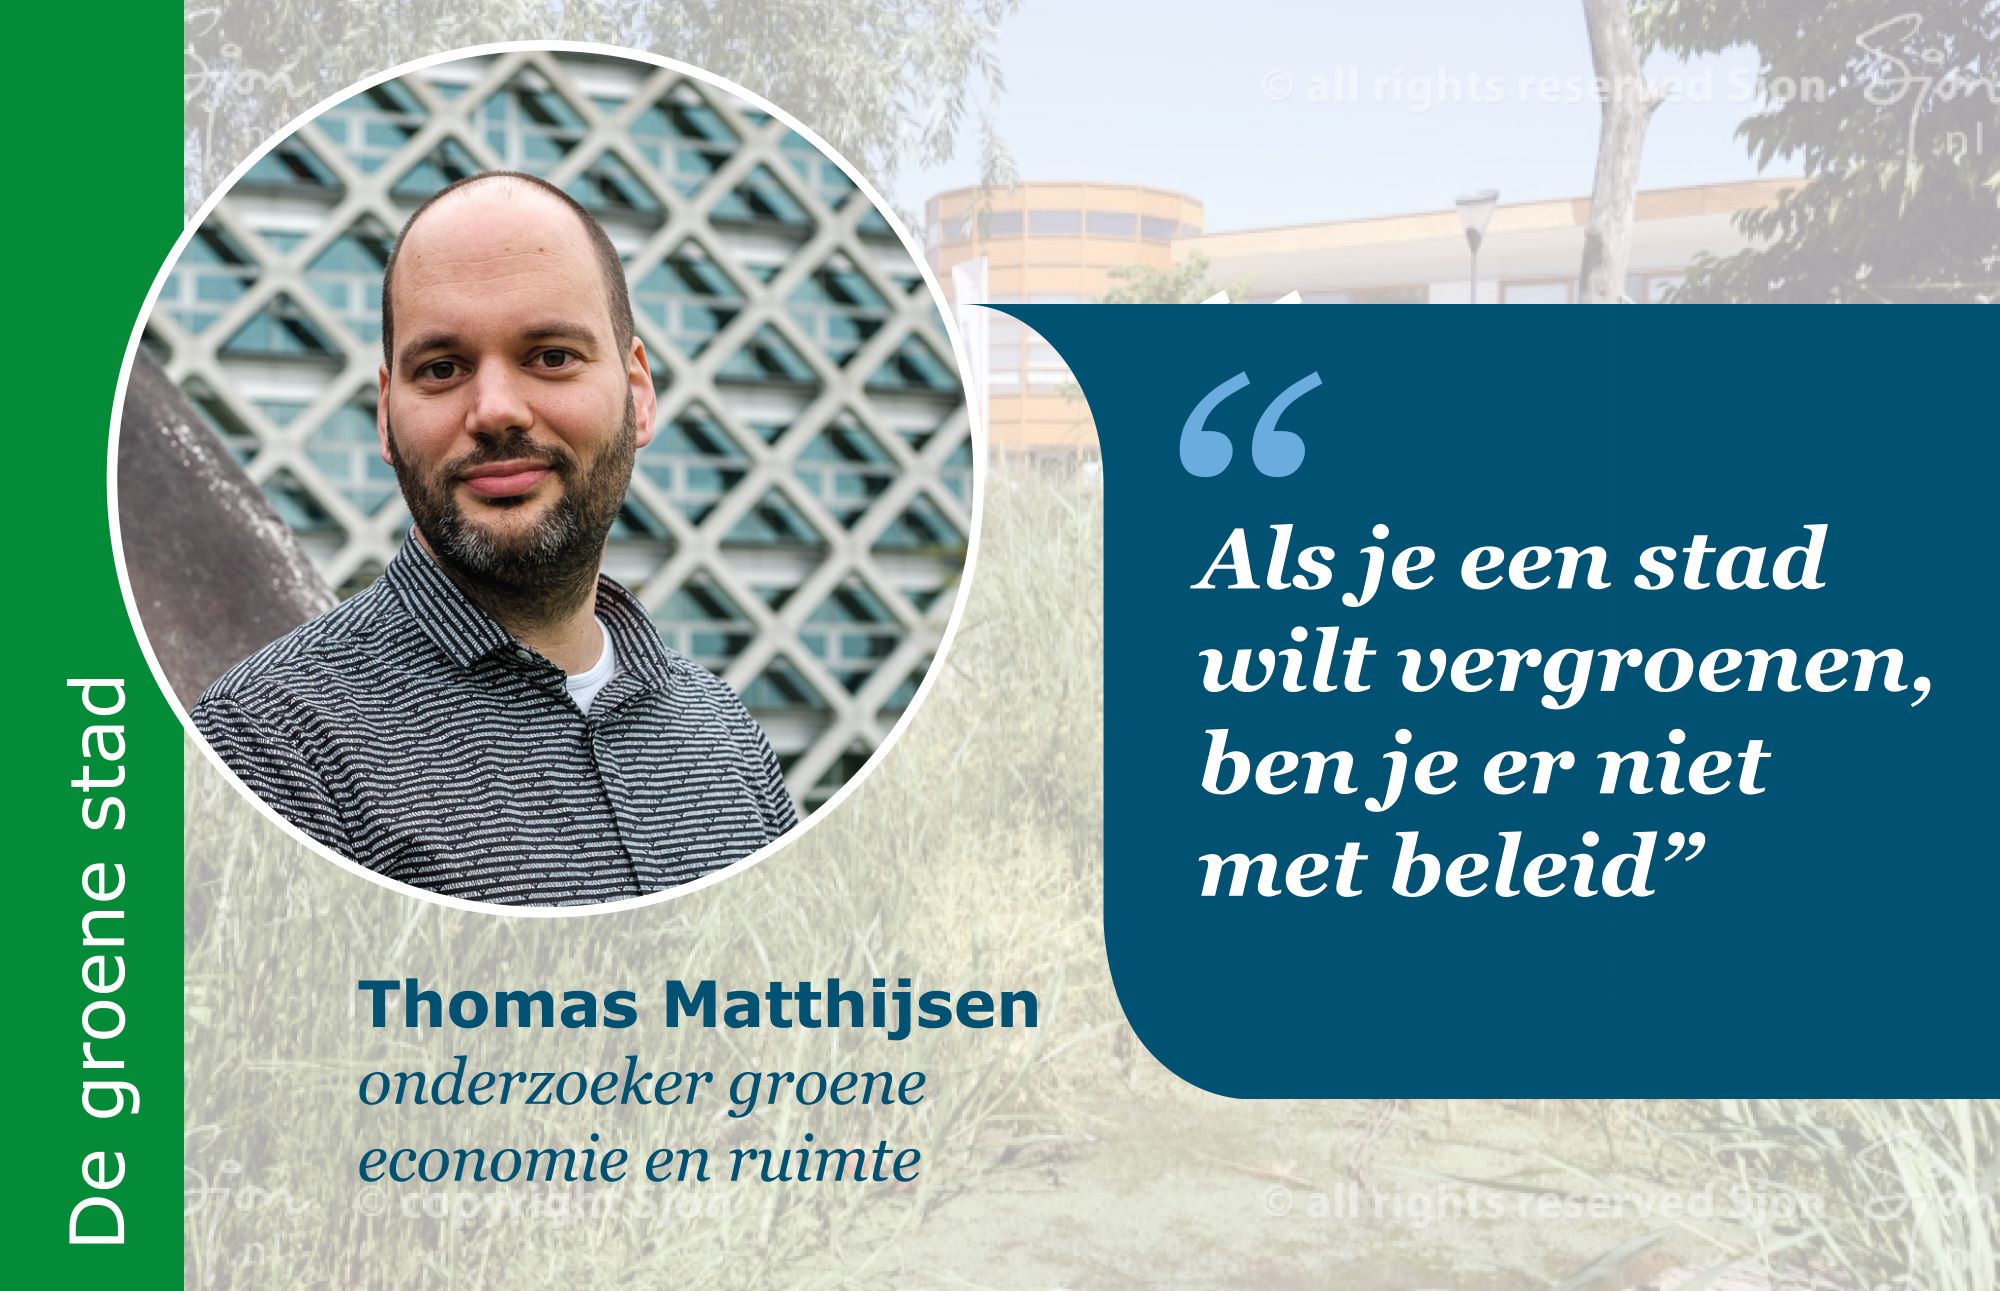 Thomas Mattijssen aan het woord over natuurinclusieve stadsontwikkeling